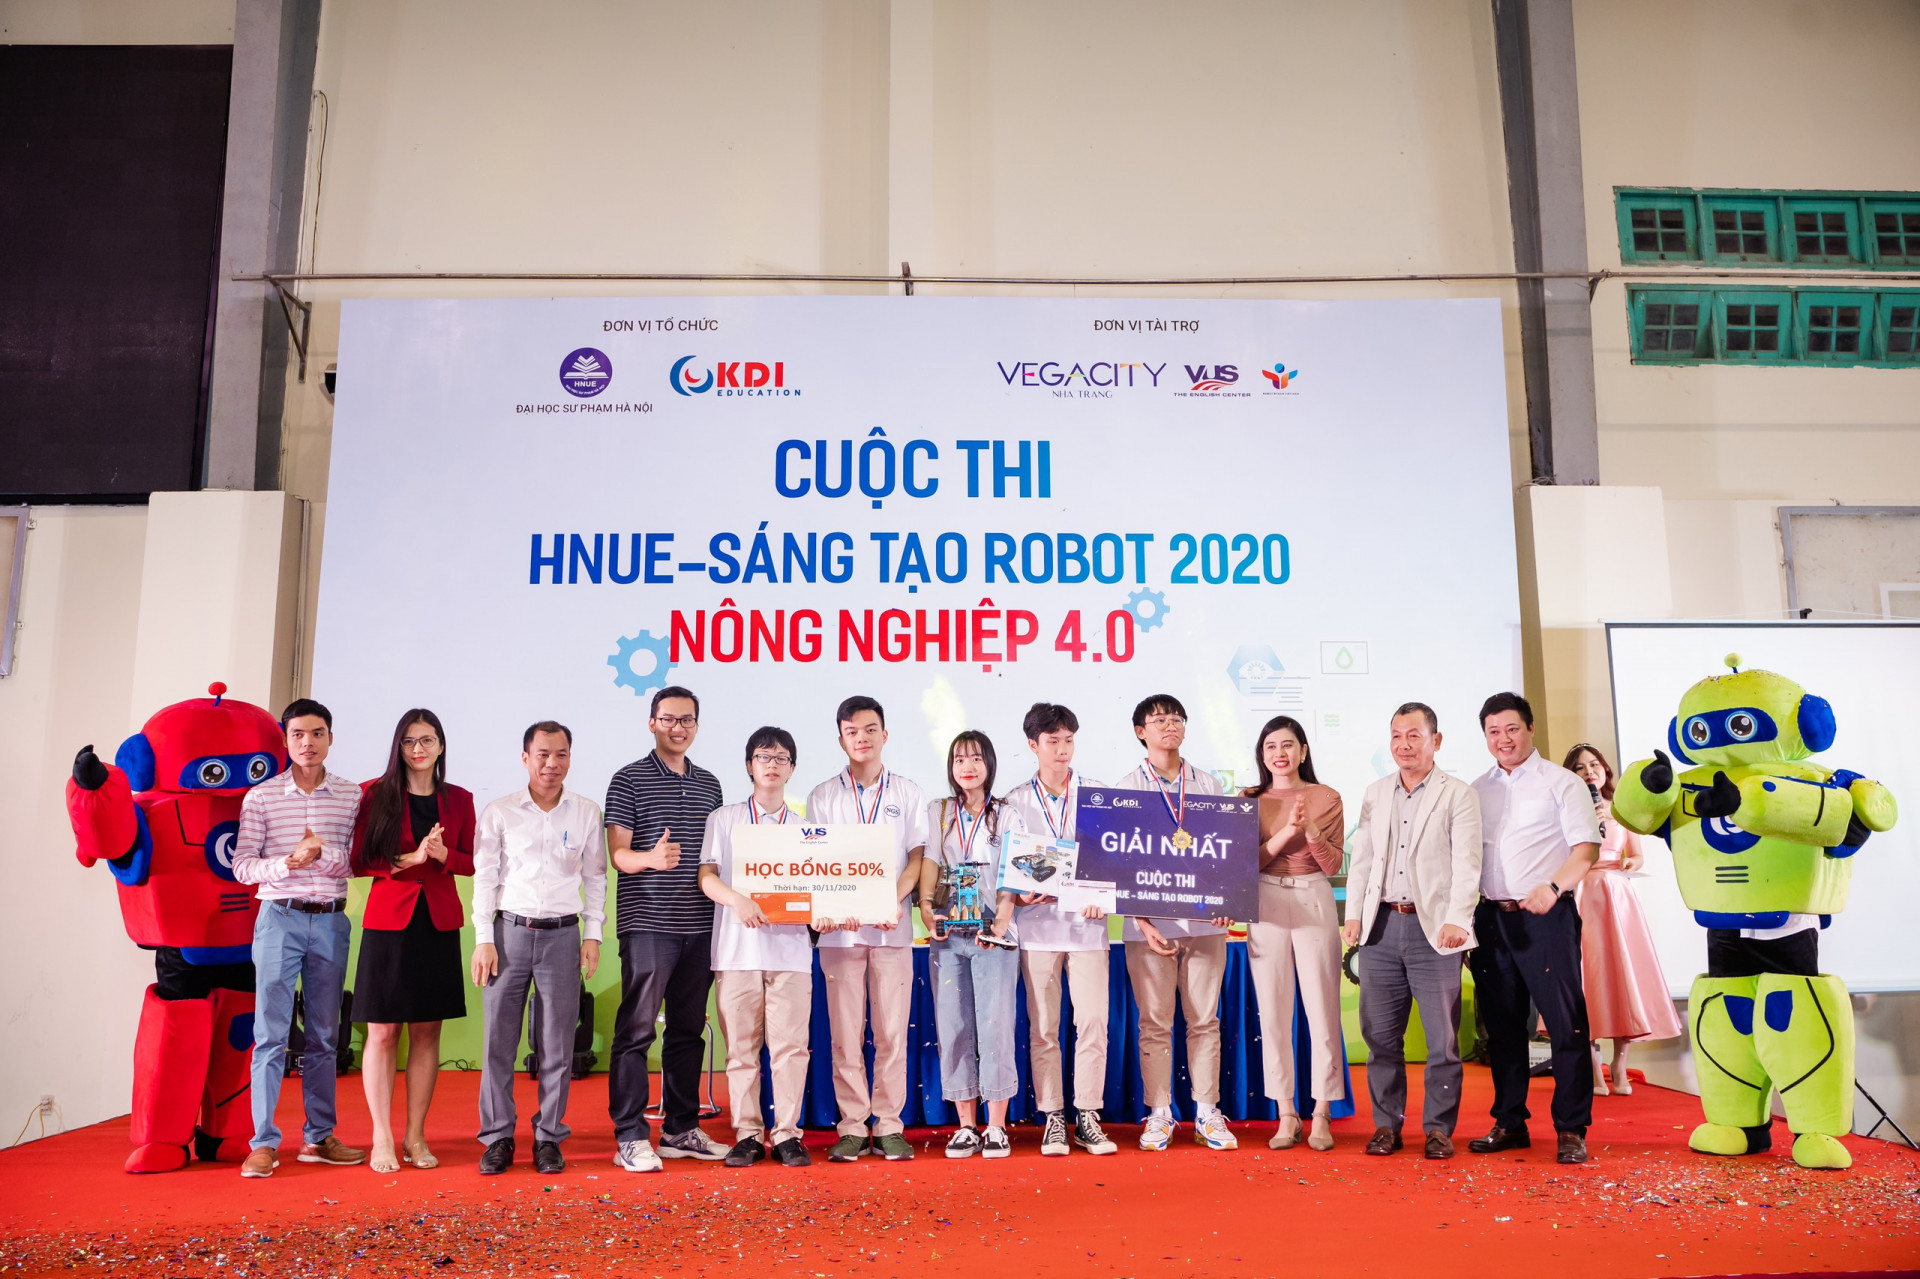 Cuộc thi sáng tạo robot 2020 do KDI Education kết hợp cùng Đại học sư phạm Hà Nội tổ chức.